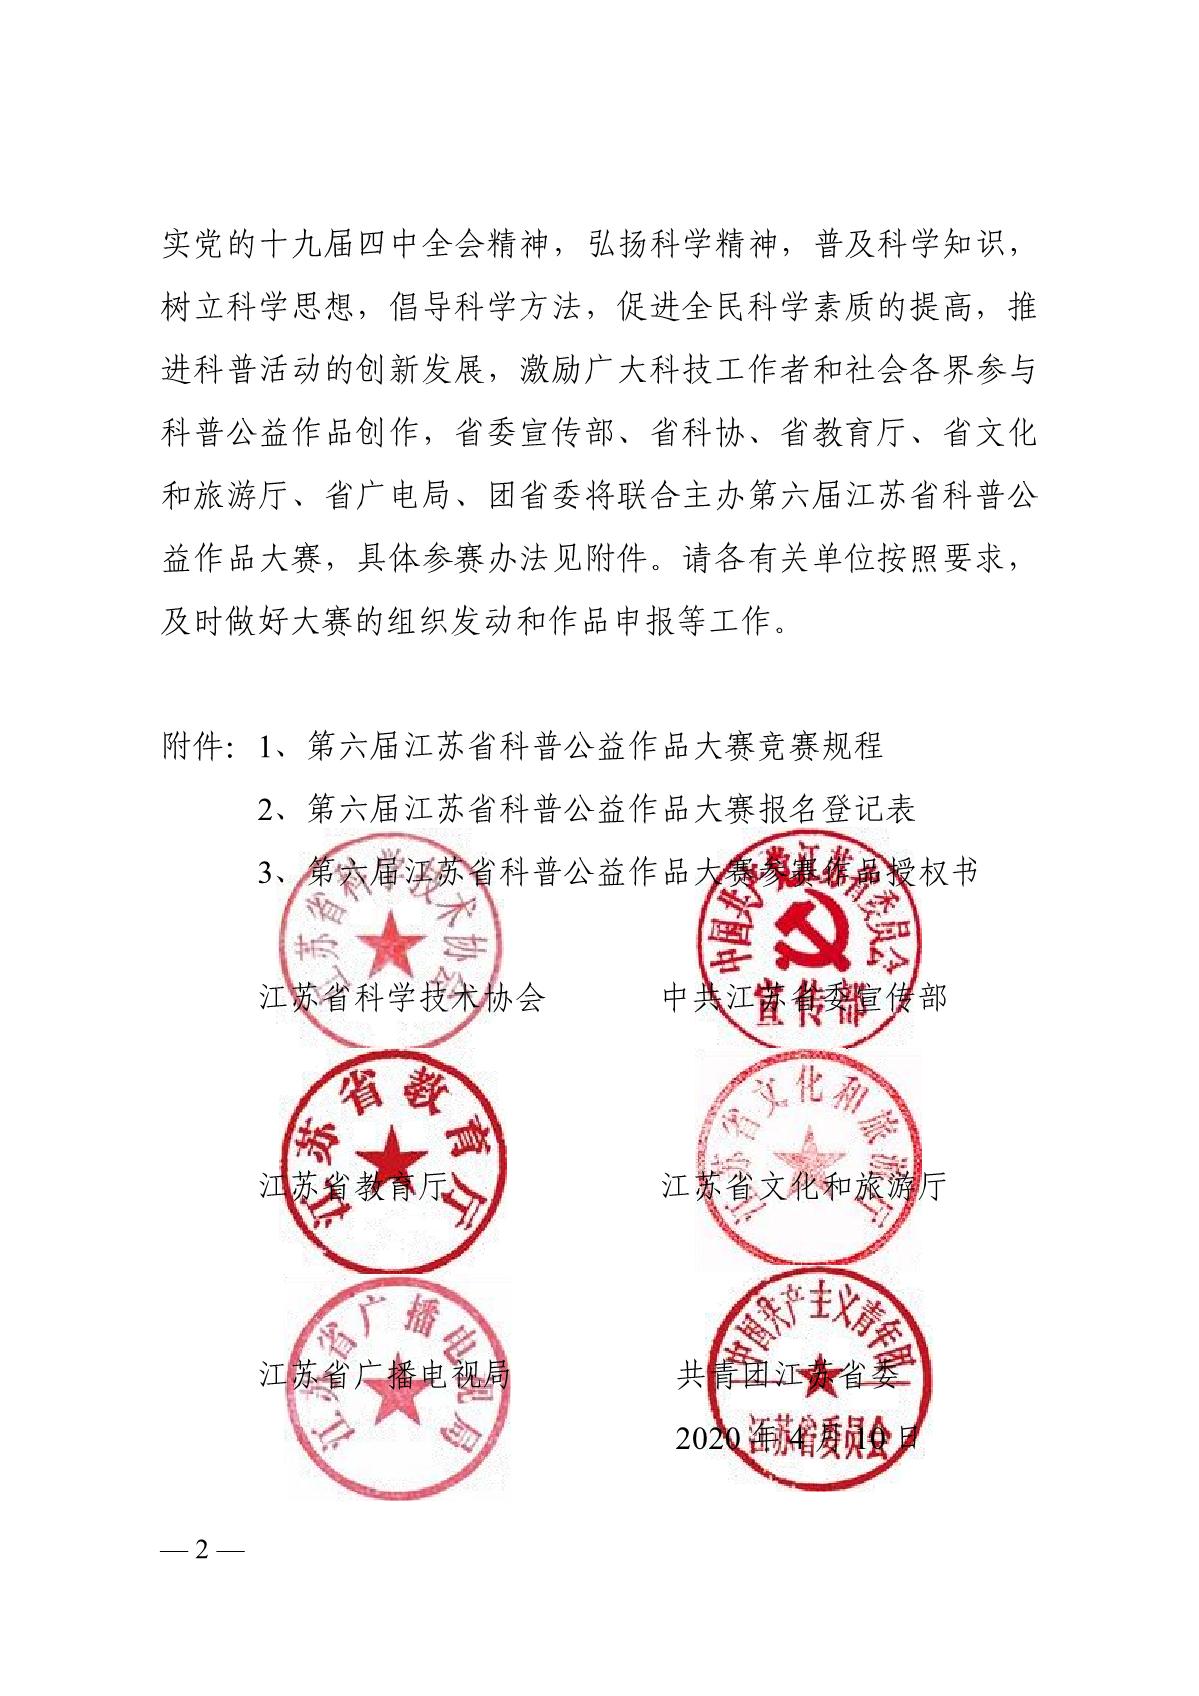 关于组织开展第六届江苏省科普公益作品大赛的通知（苏科协发〔2020〕46号）(1)_2.JPG